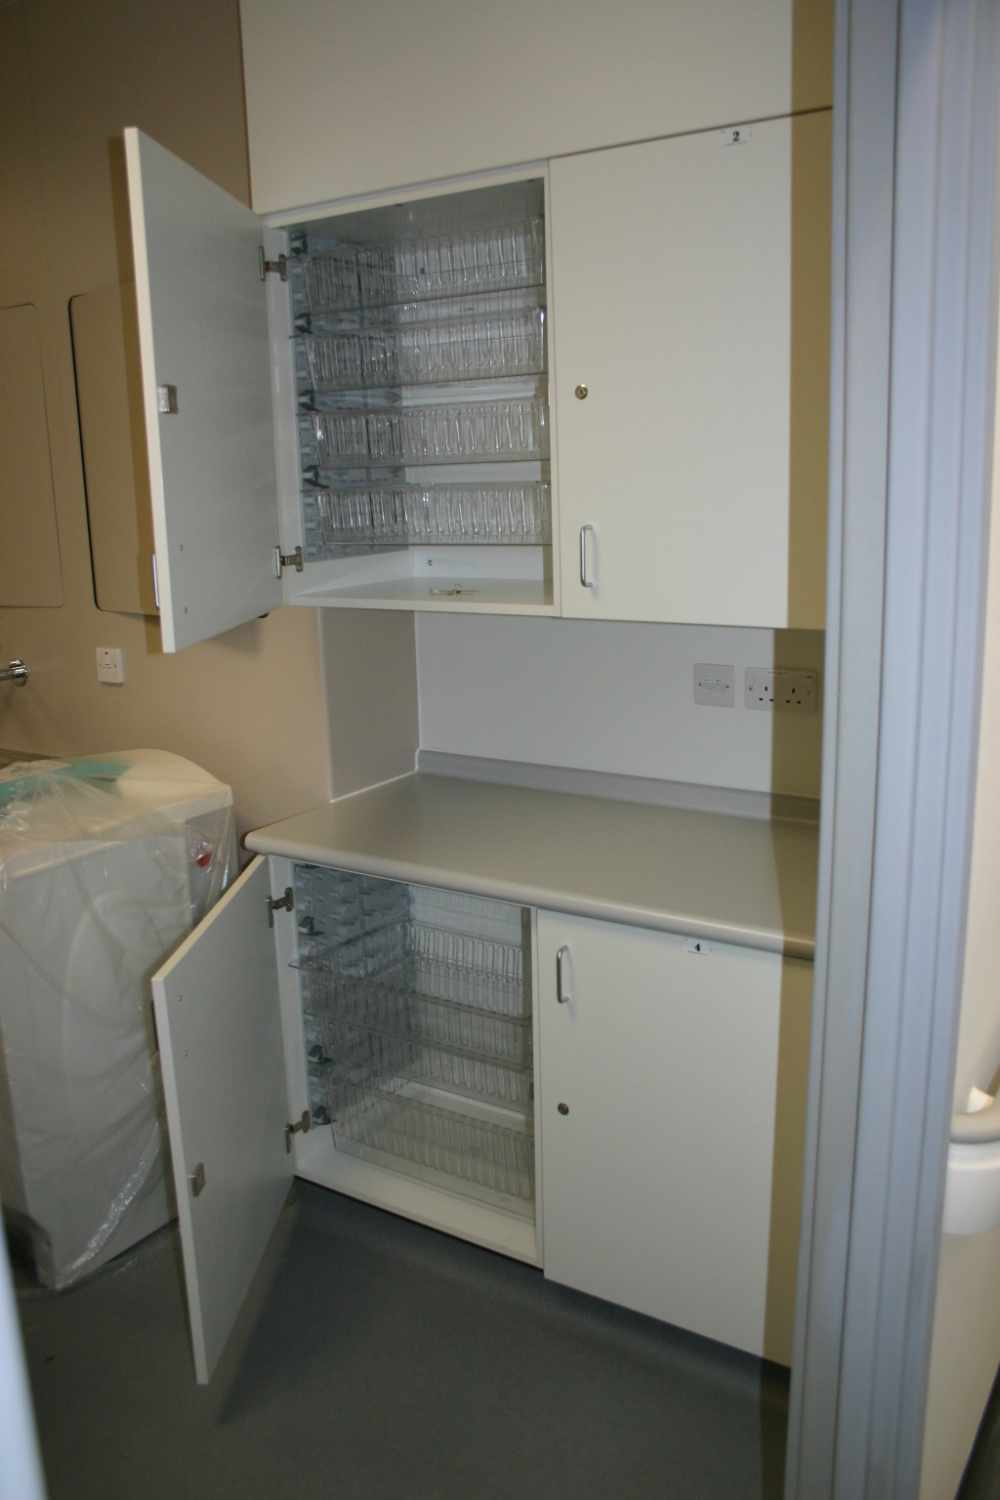 Storage units and trays at Heatherwood Hospital